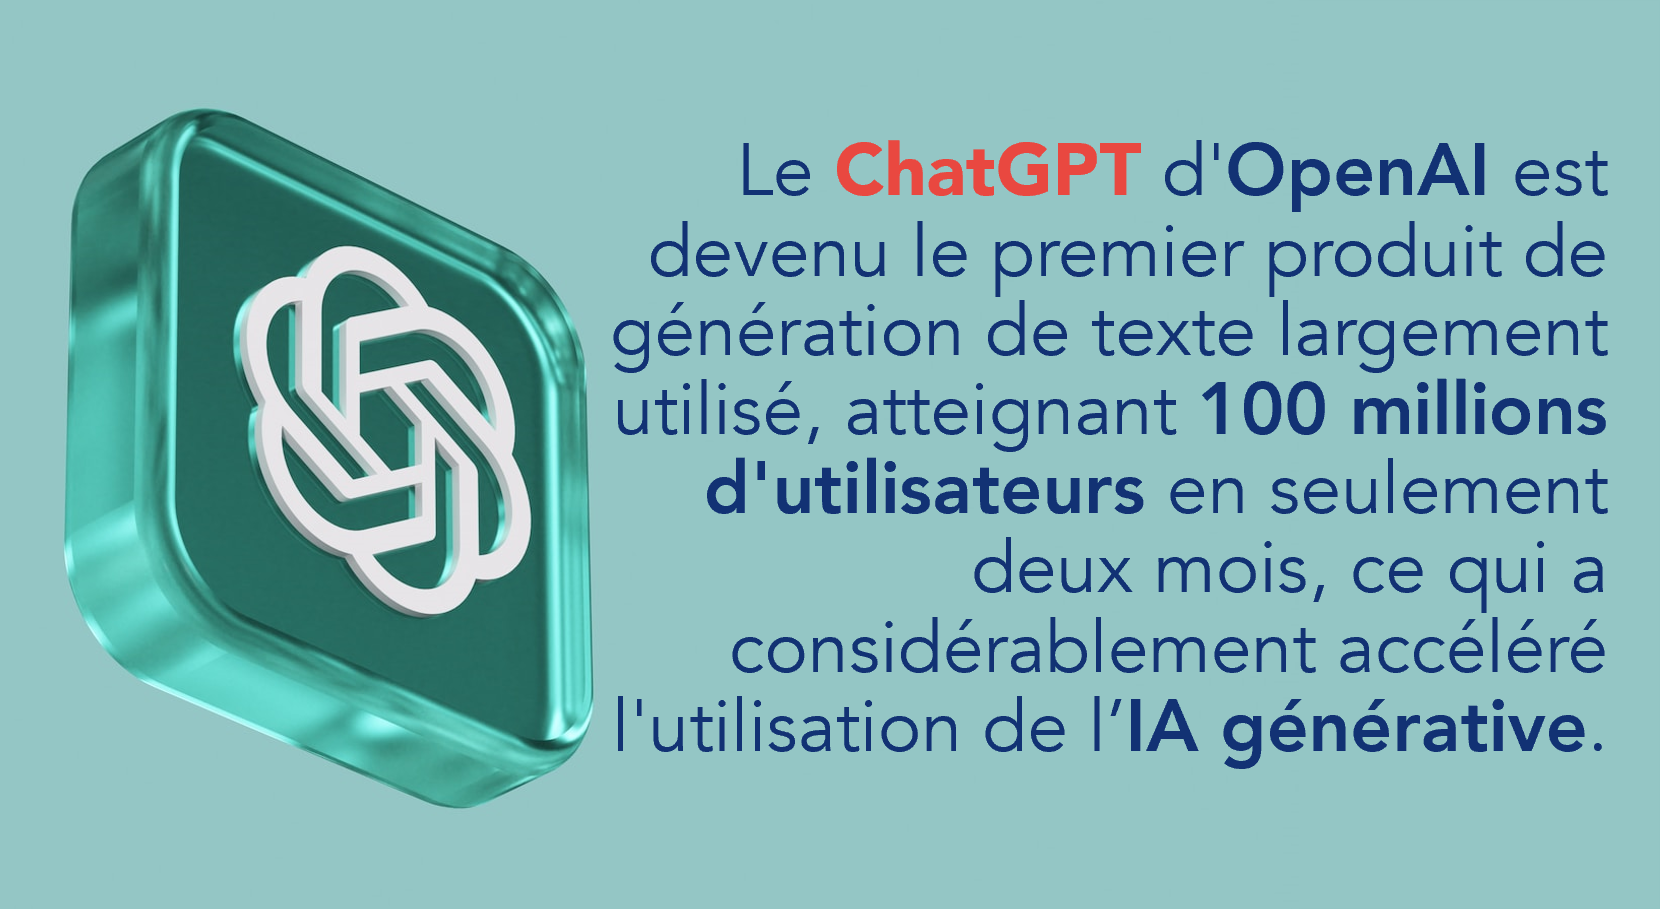 Le ChatGPT d'OpenAI est devenu le premier produit de génération de texte largement utilisé, atteignant 100 millions d'utilisateurs en seulement deux mois, ce qui a considérablement accéléré l'utilisation de l'IA générative.